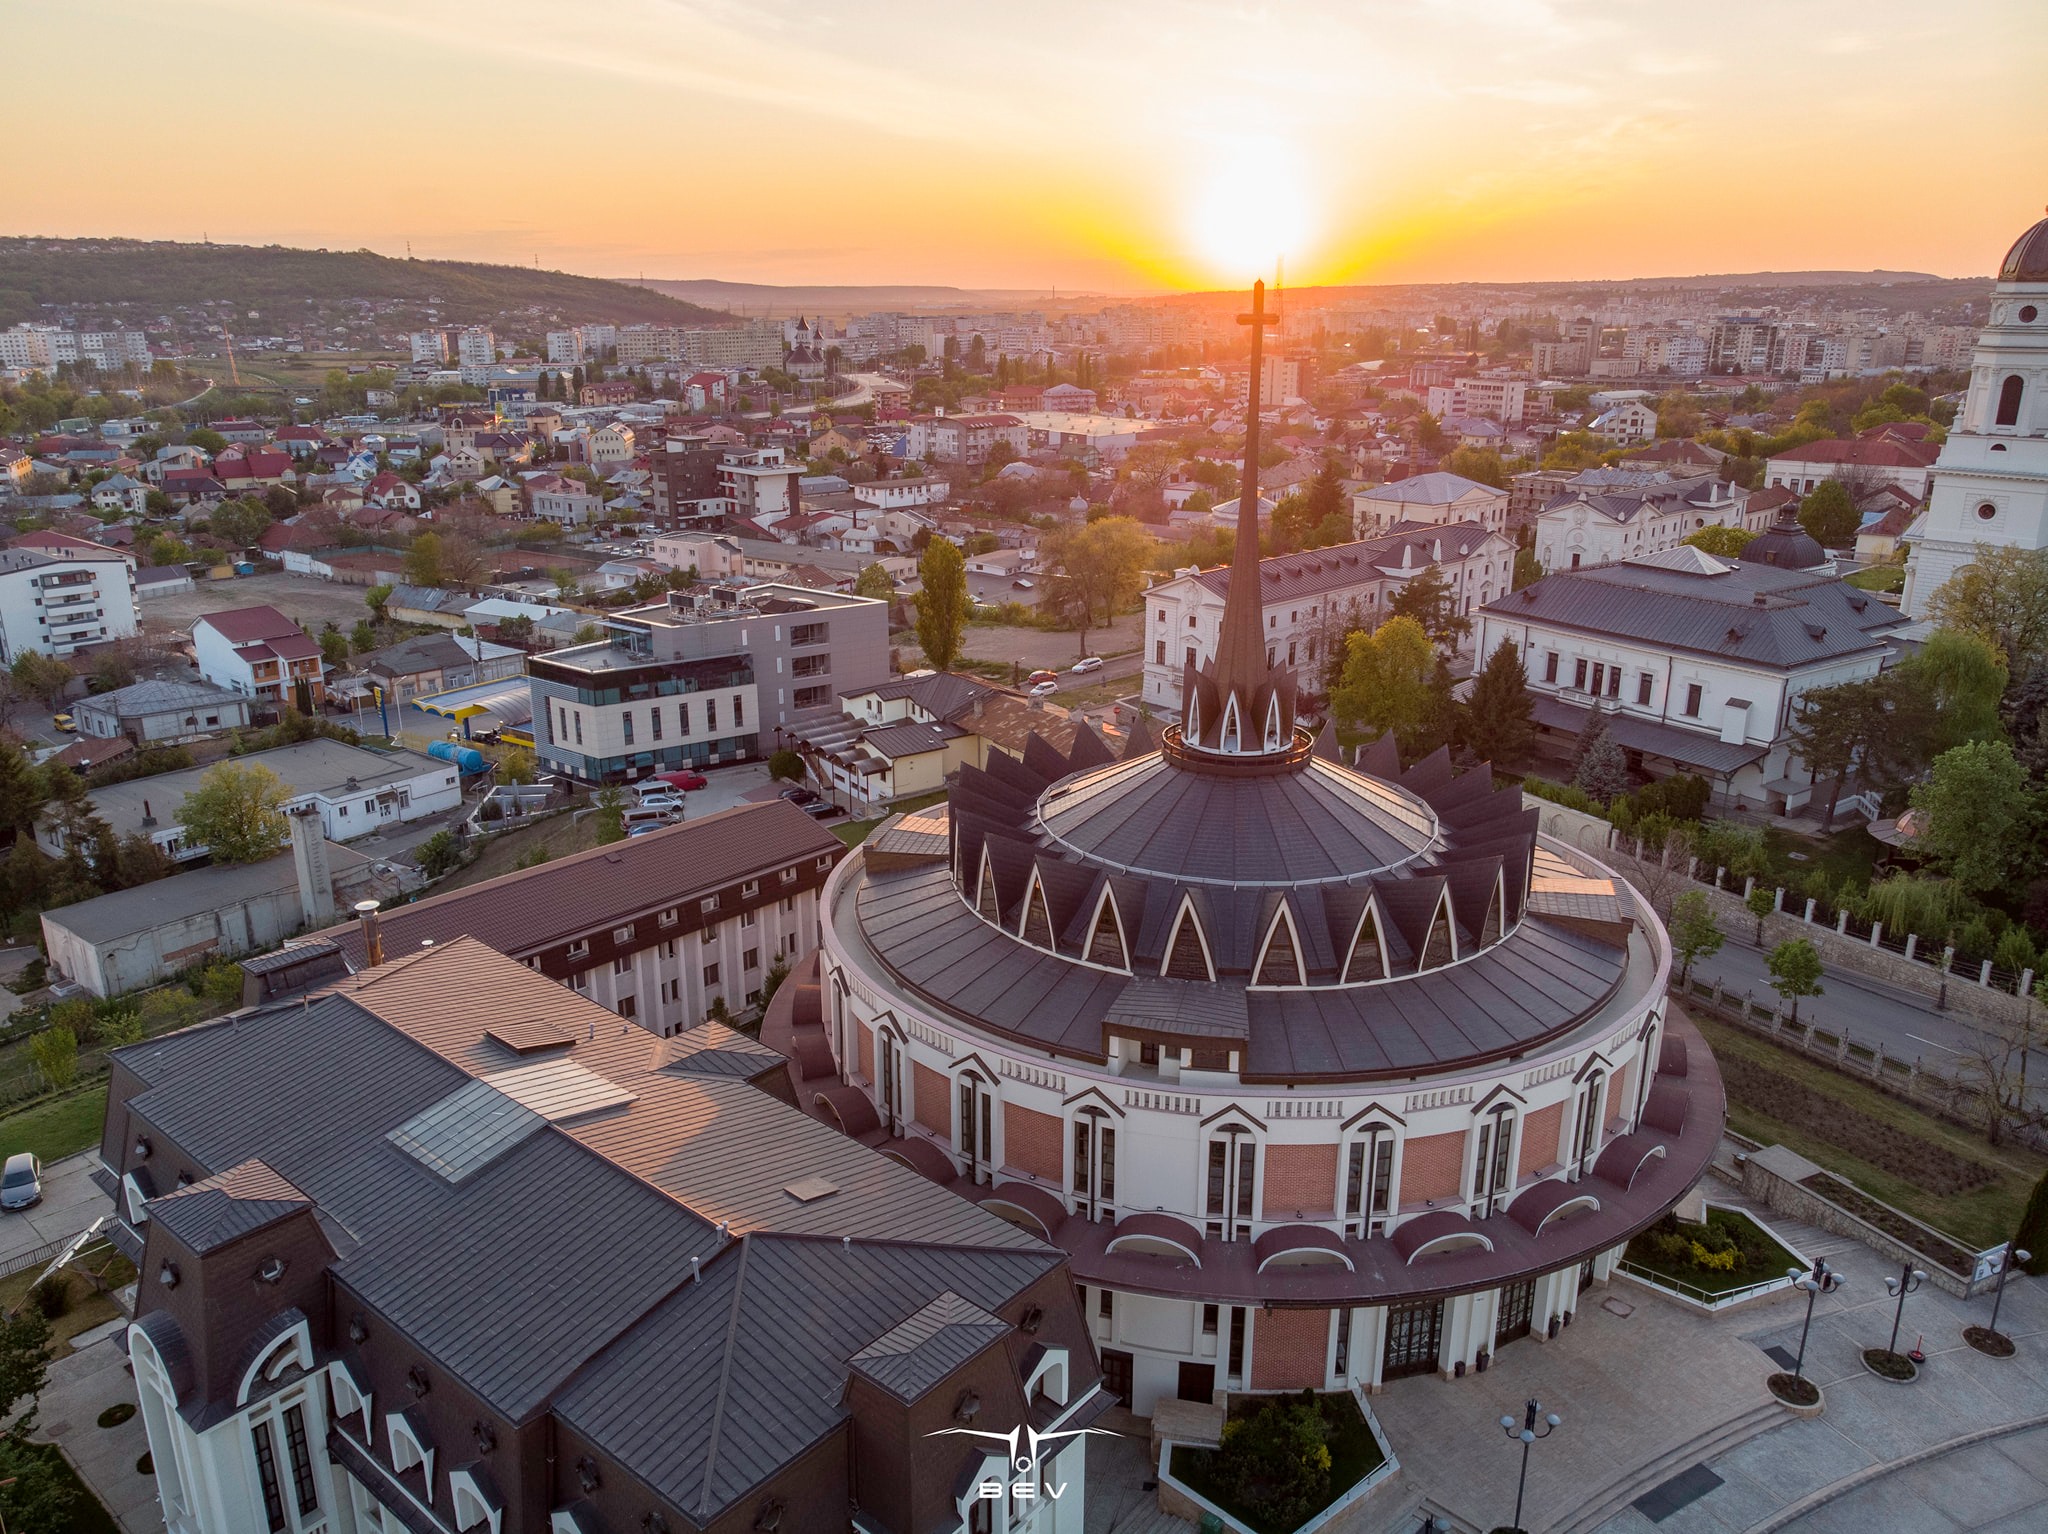 Biserici și catedrale impresionante din centrul Iașiului